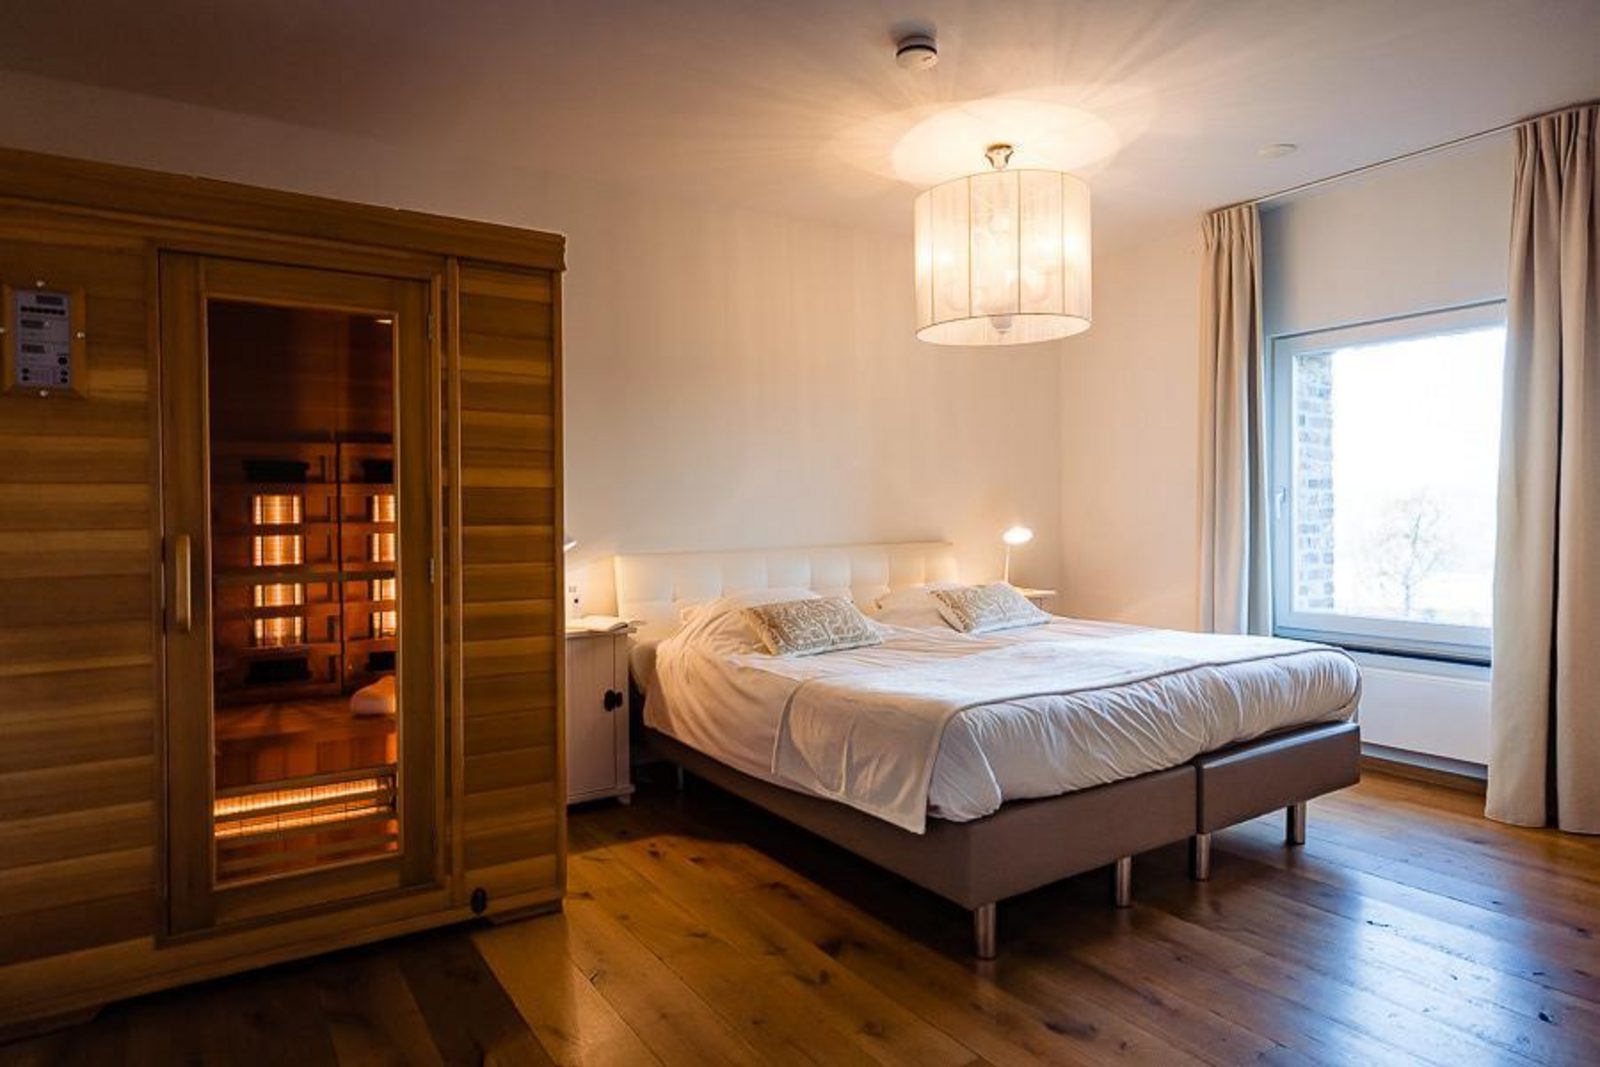 Landgoed St. Geertruid Mirabelle - luxe vakantiehuis met hottub en sauna in Limburg